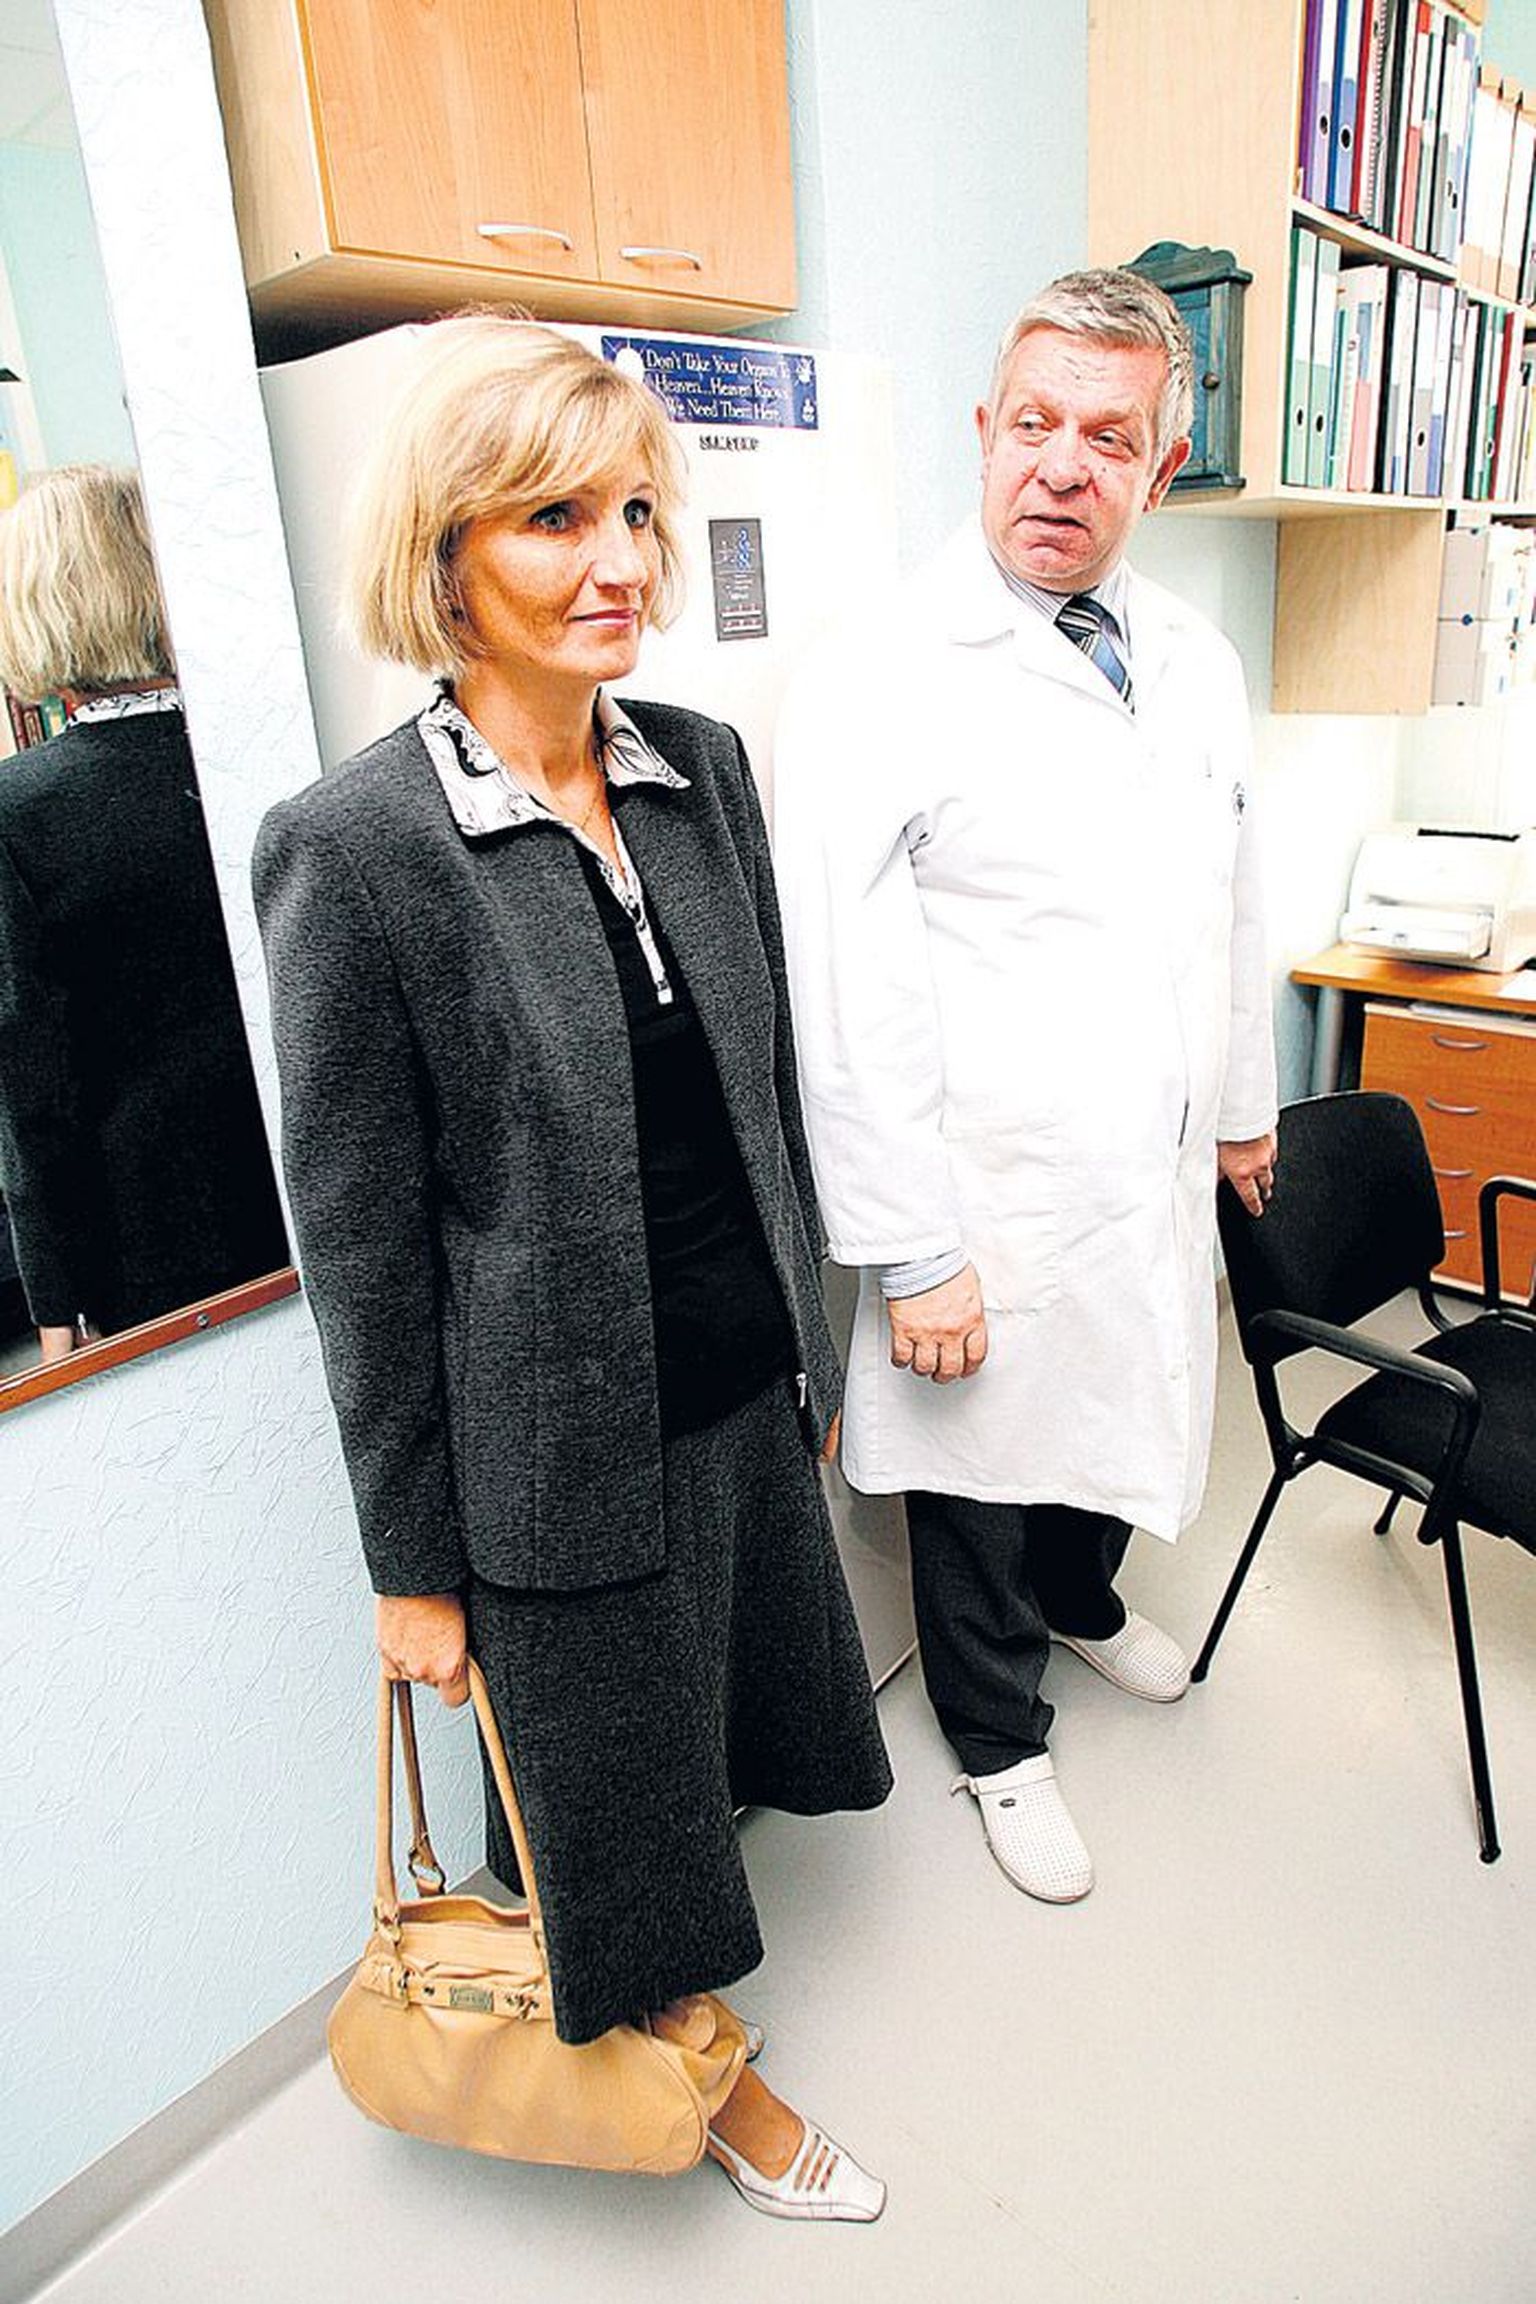 Narvalanna Þanna Zavizjon on üks kirurg Toomas Väli kümnest patsiendist, kellele on Tartus siiratud maks.